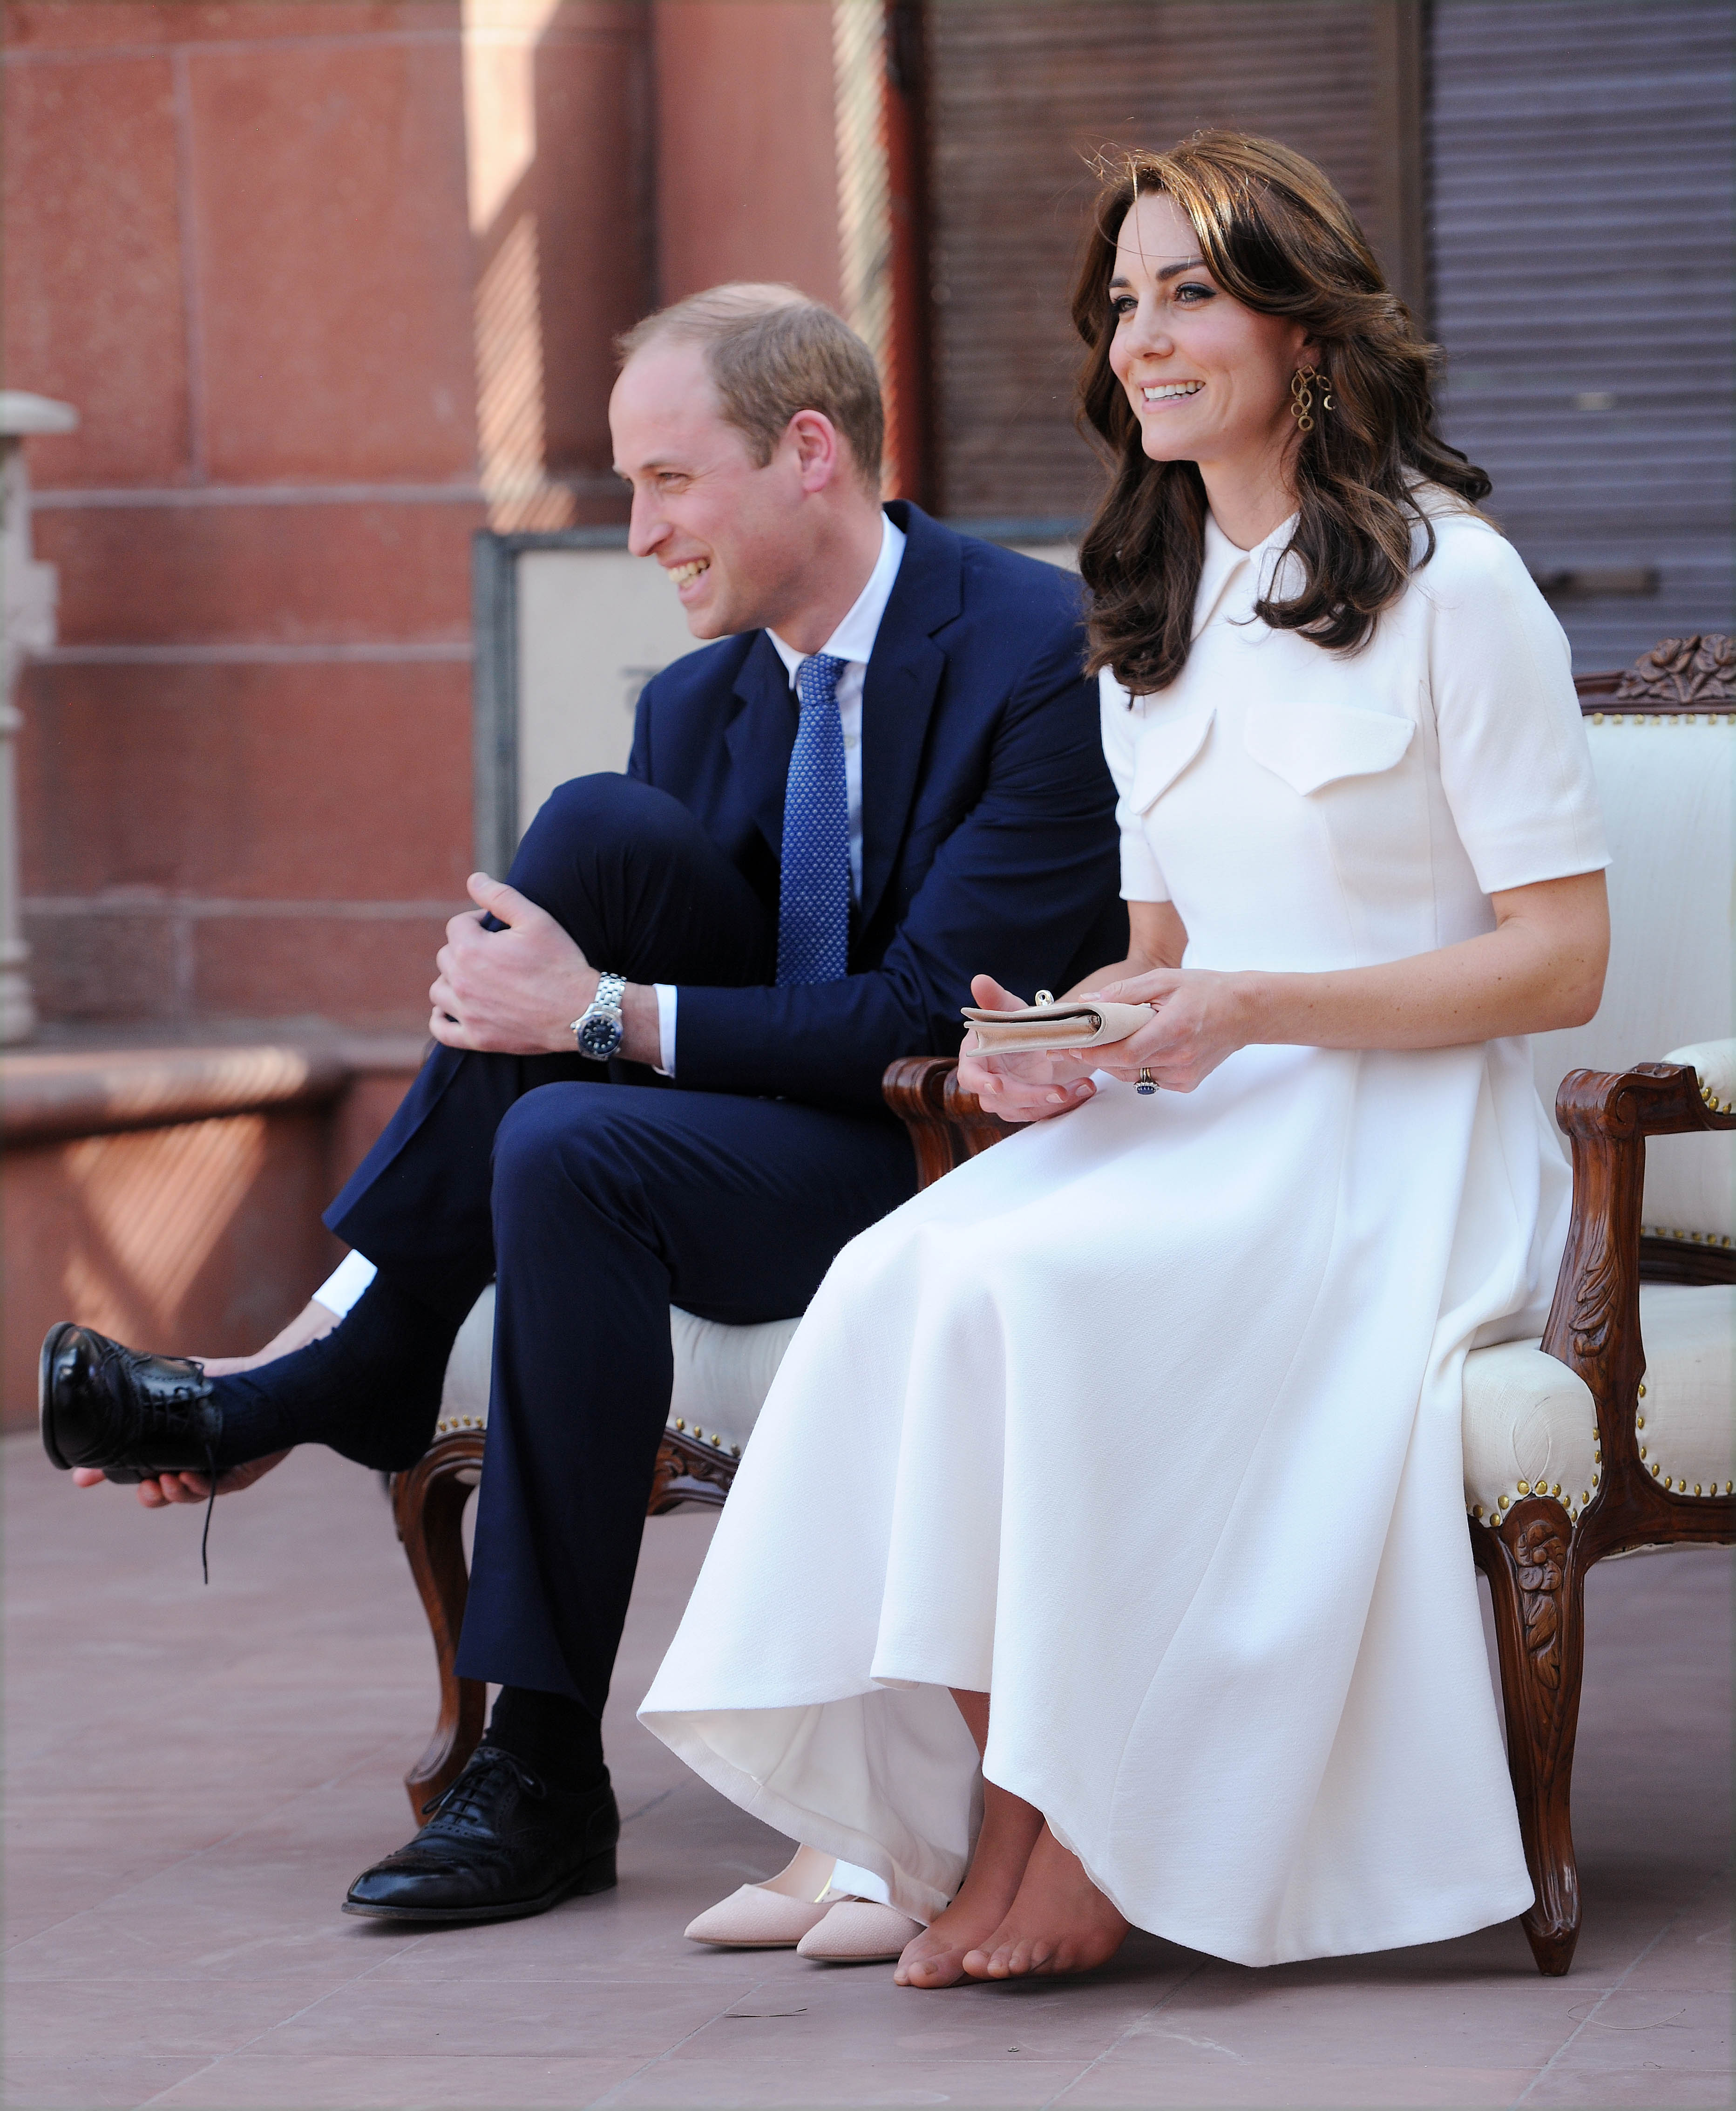 Kate Middleton und Prinz William besuchen Gandhi Smriti im Jahr 2016